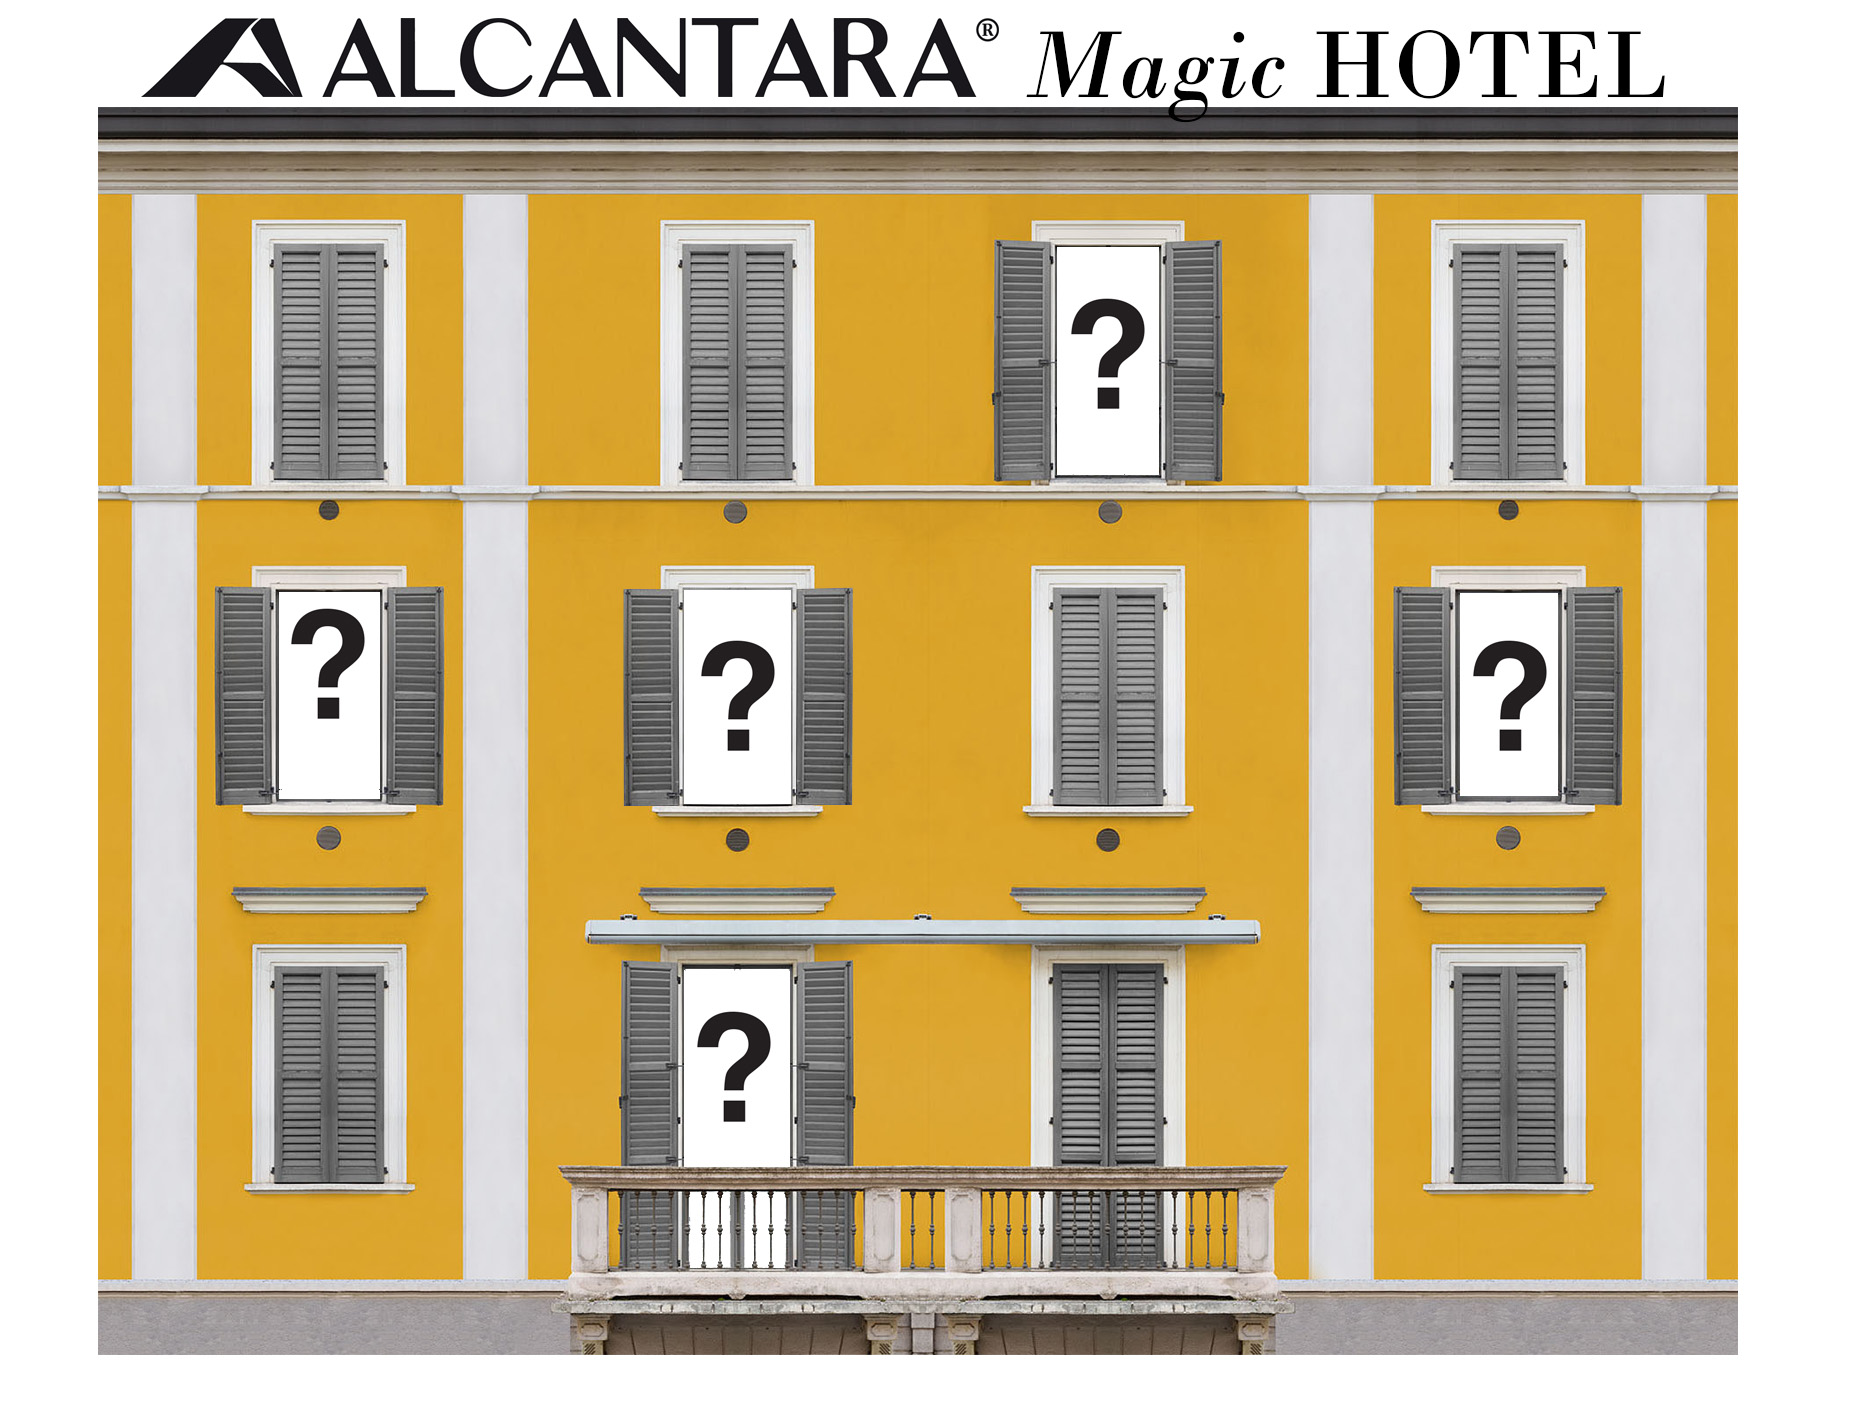 Fuorisalone 2016 Milano: Alcantara presenta il Magic Hotel, ideato da Gentucca Bini, in Corso Como